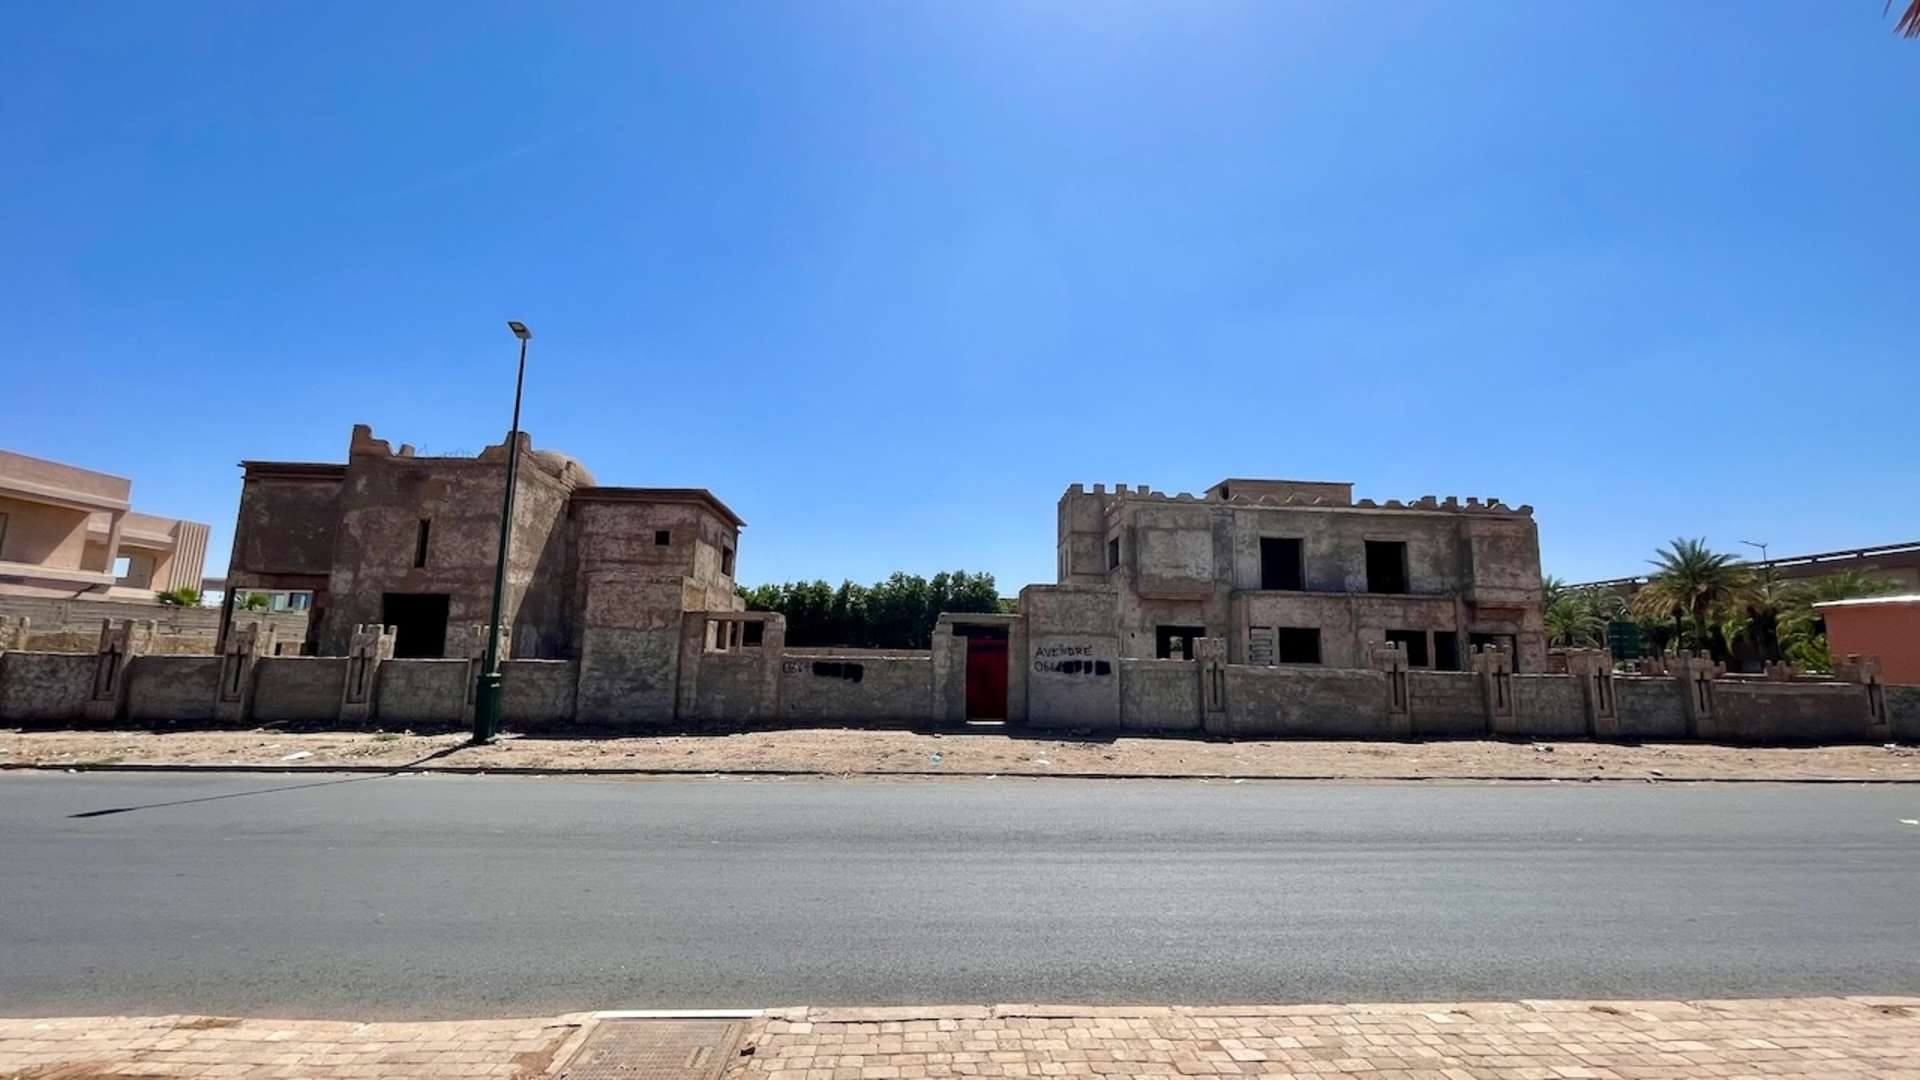 Vente,Villa,3 villas semi-finies à vendre dans le quartier Agdal à Marrakech,Marrakech,Agdal